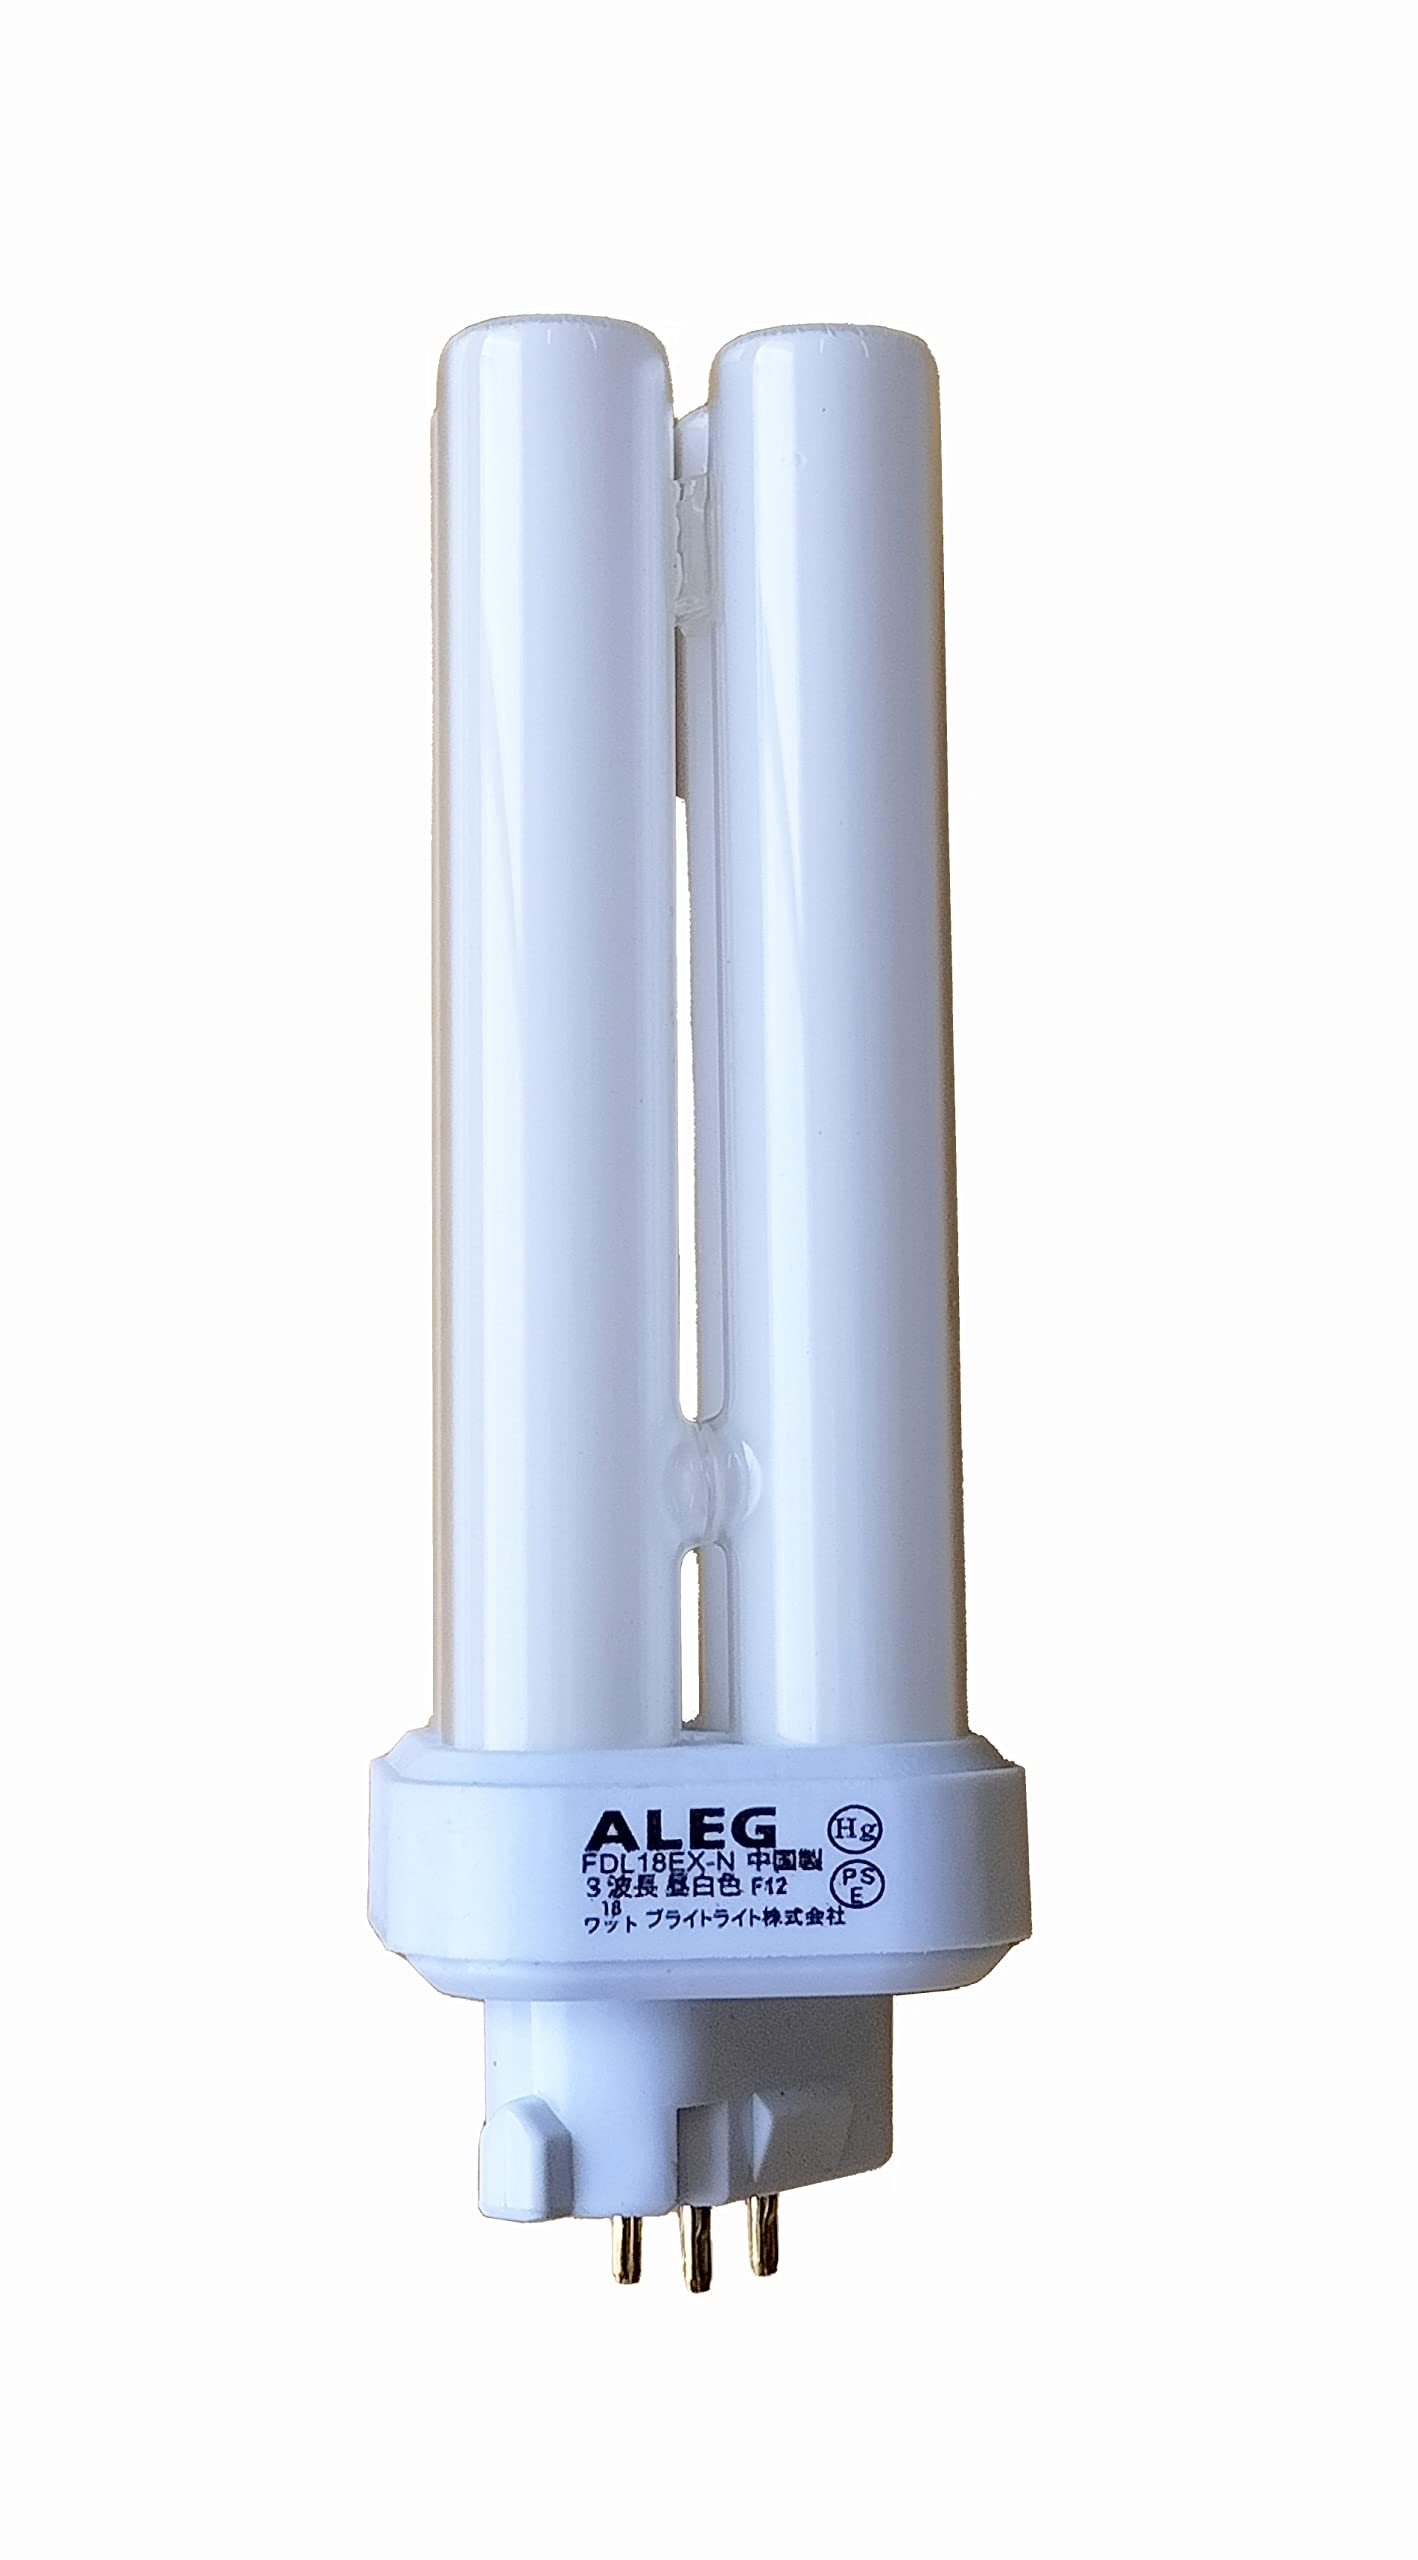 アレッグ(ALEG) 三波長昼白色コンパクト蛍光灯 FDL18EX-N